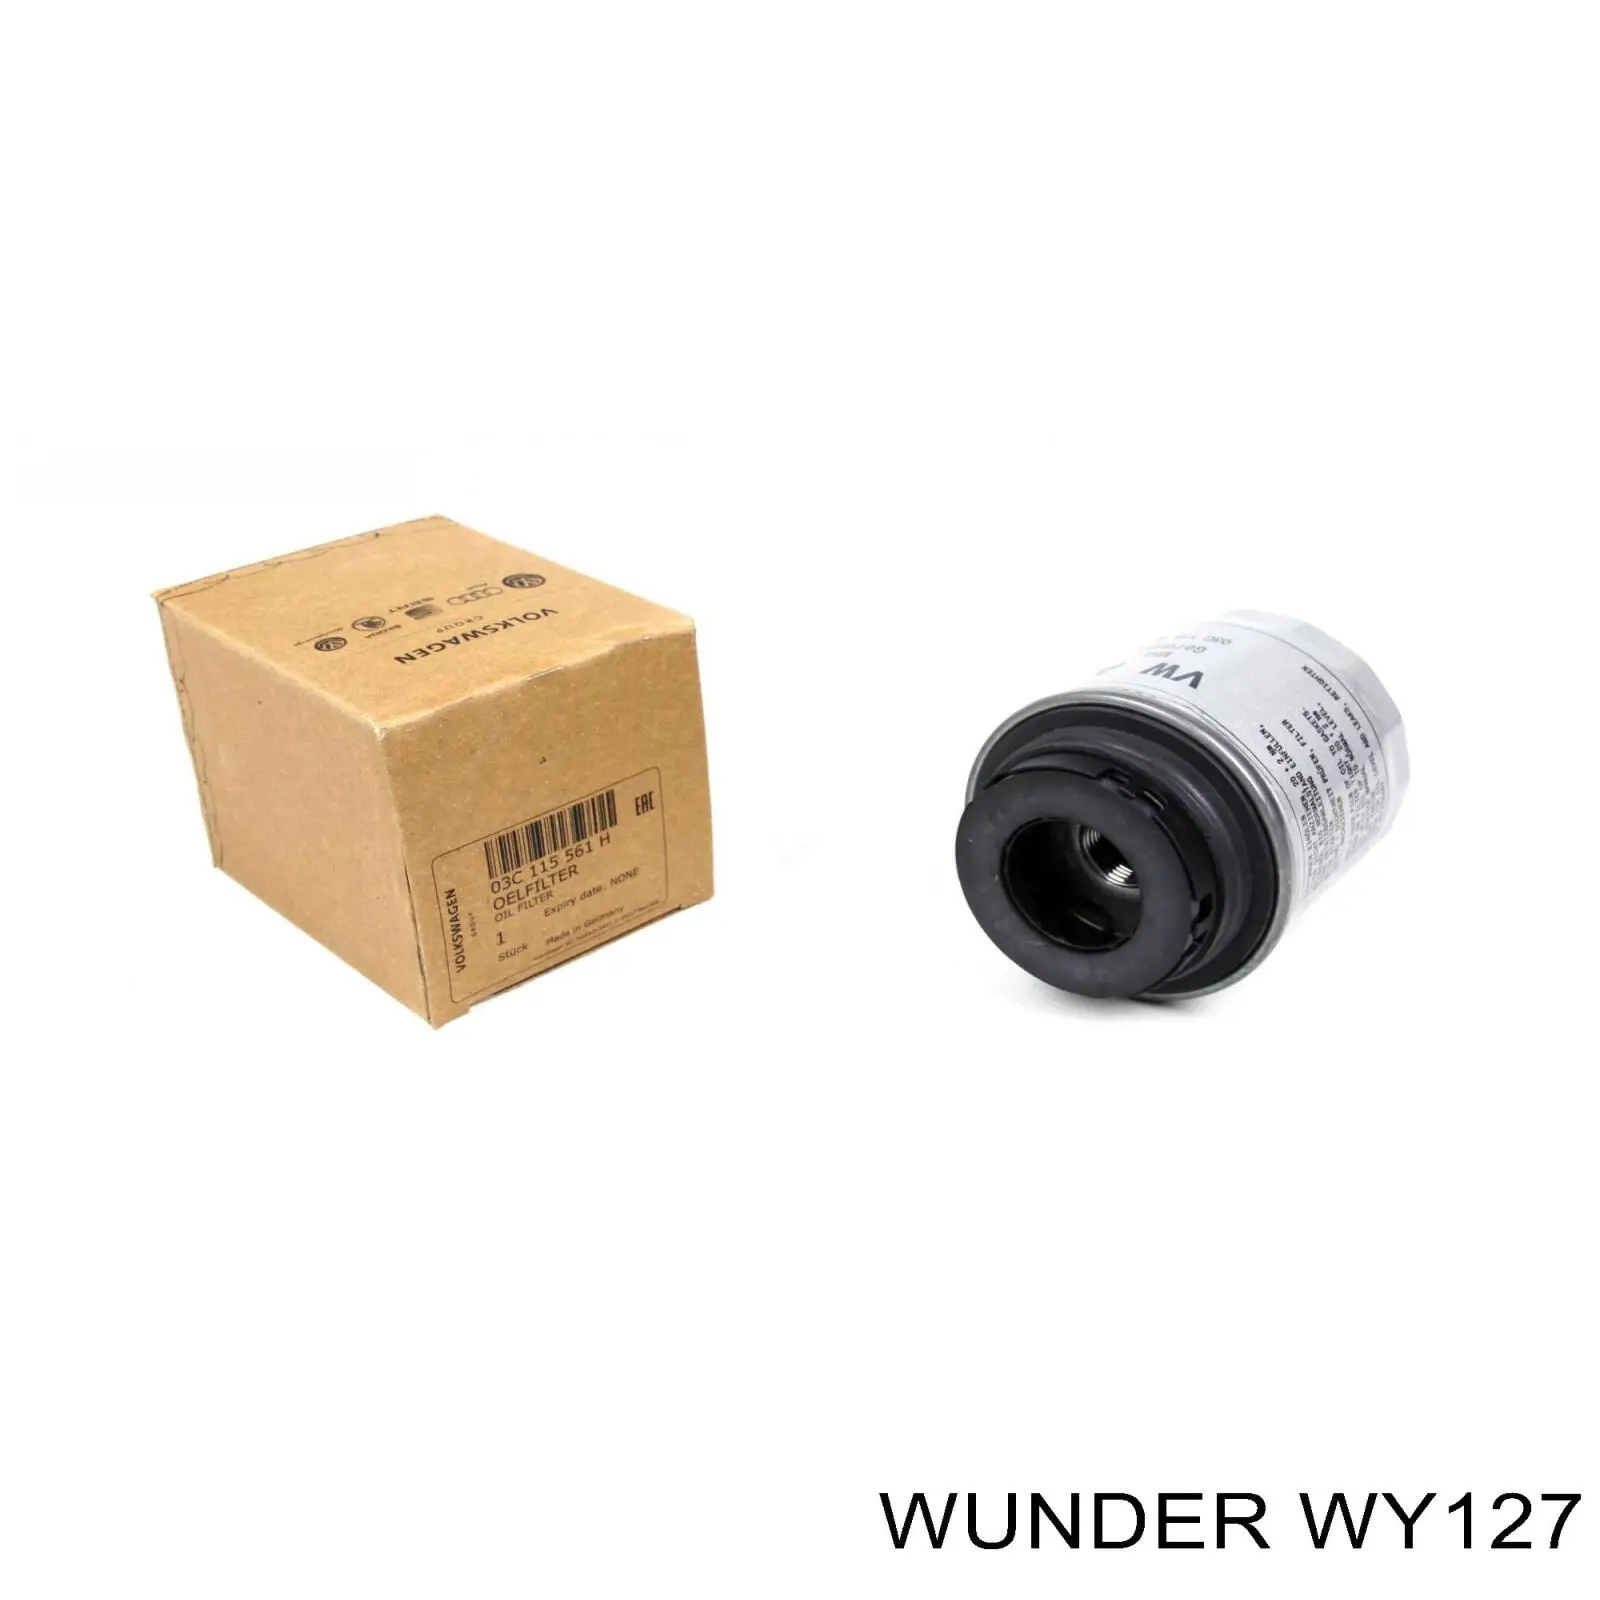 WY 127 Wunder масляный фильтр